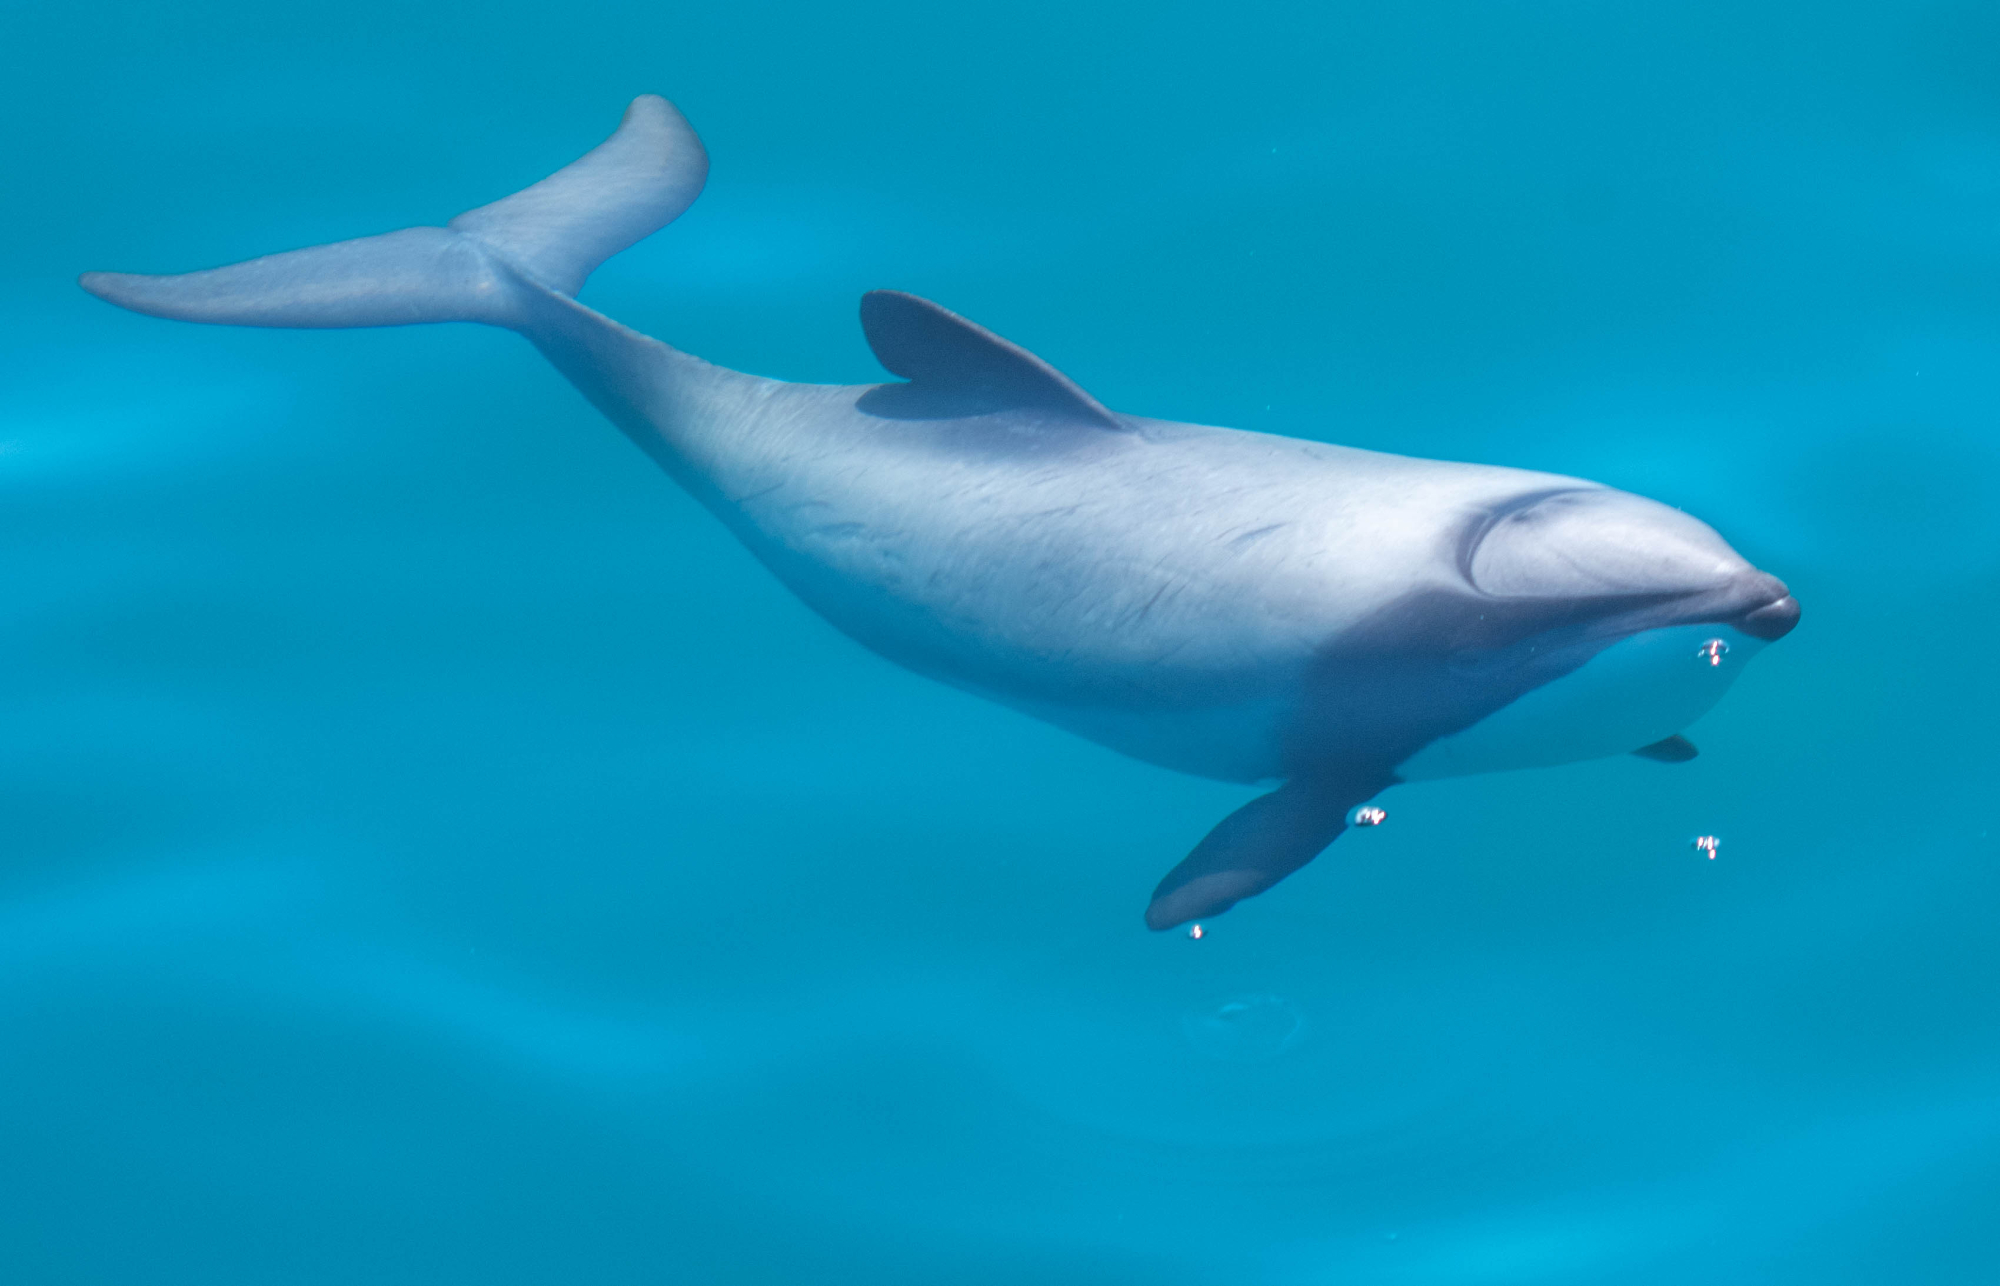 Hectors Dolphin